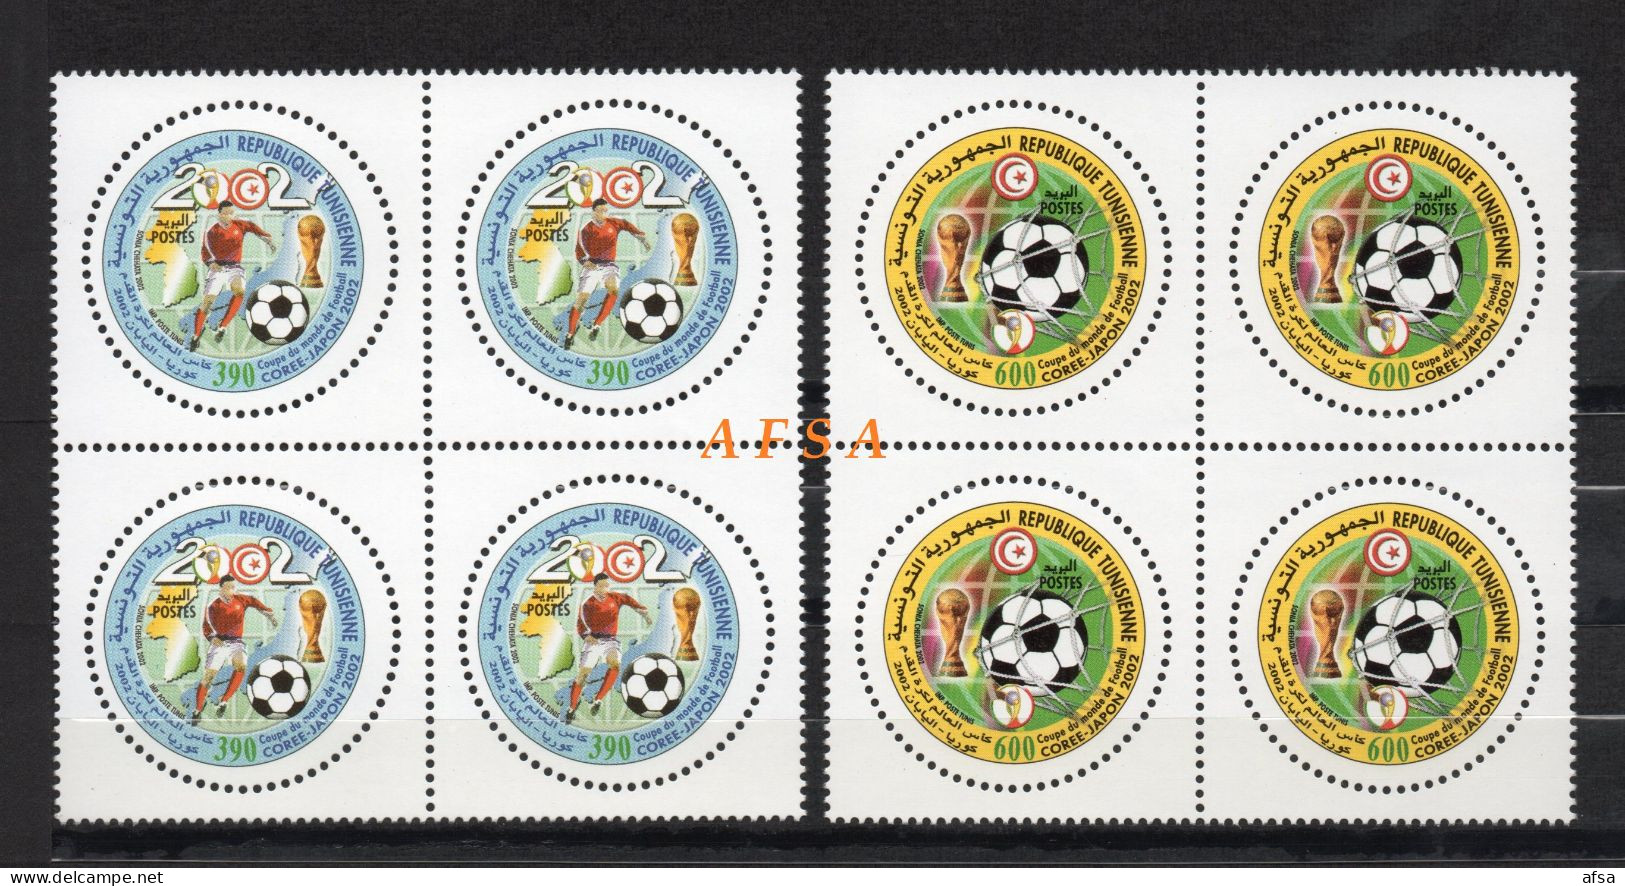 Football World Cup Korea-Japon 2002( Block 4) // Coupe Du Monde De Foot-Ball Corée-Japon 2002 (bloc De 4) - 2002 – Südkorea / Japan